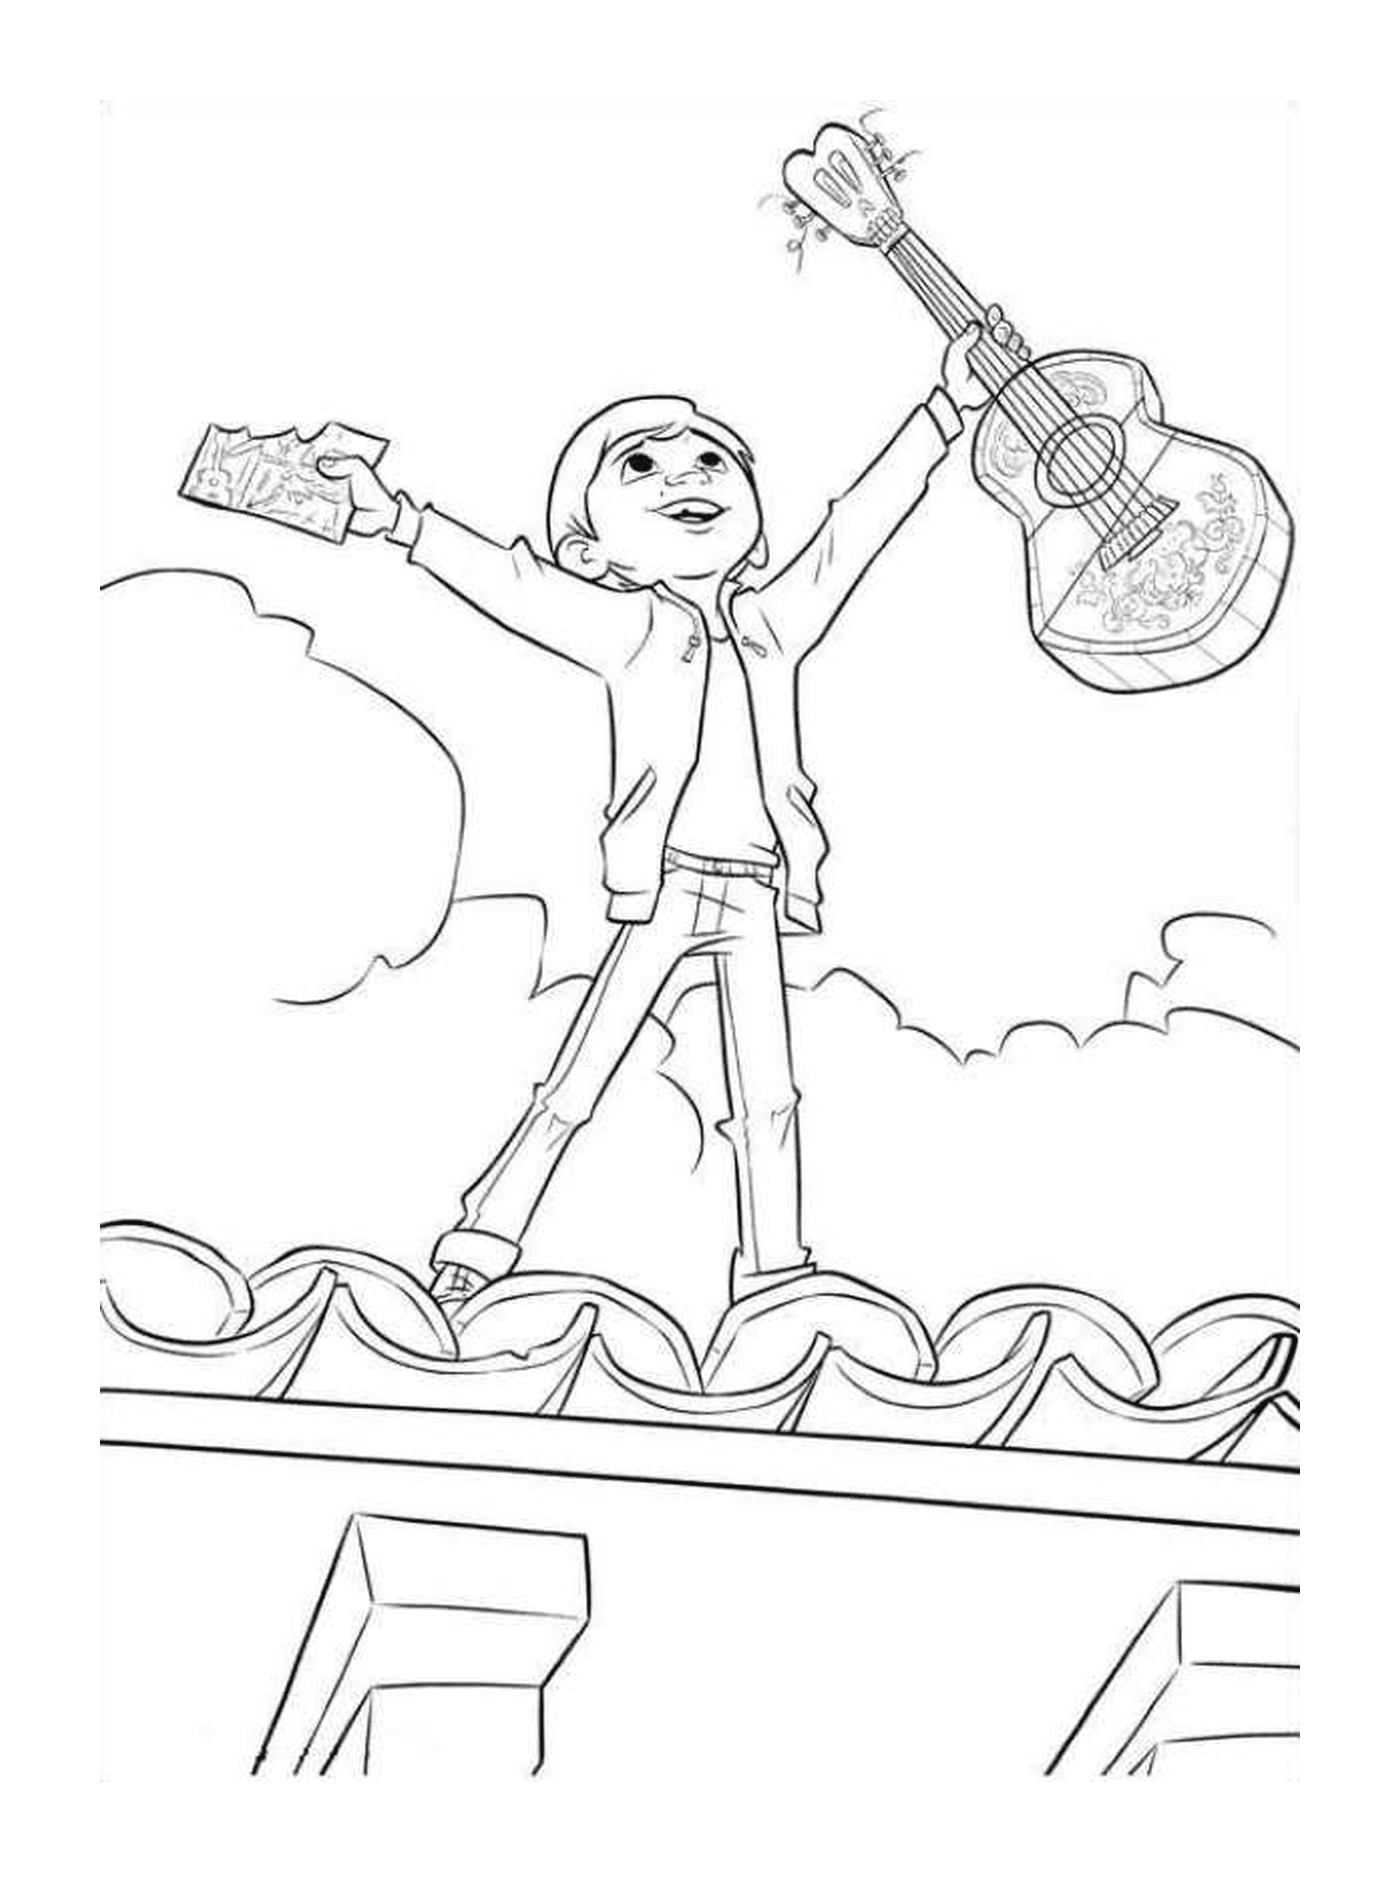  Miguel auf dem Dach des Hauses mit seiner Gitarre, Symbol der Freiheit 